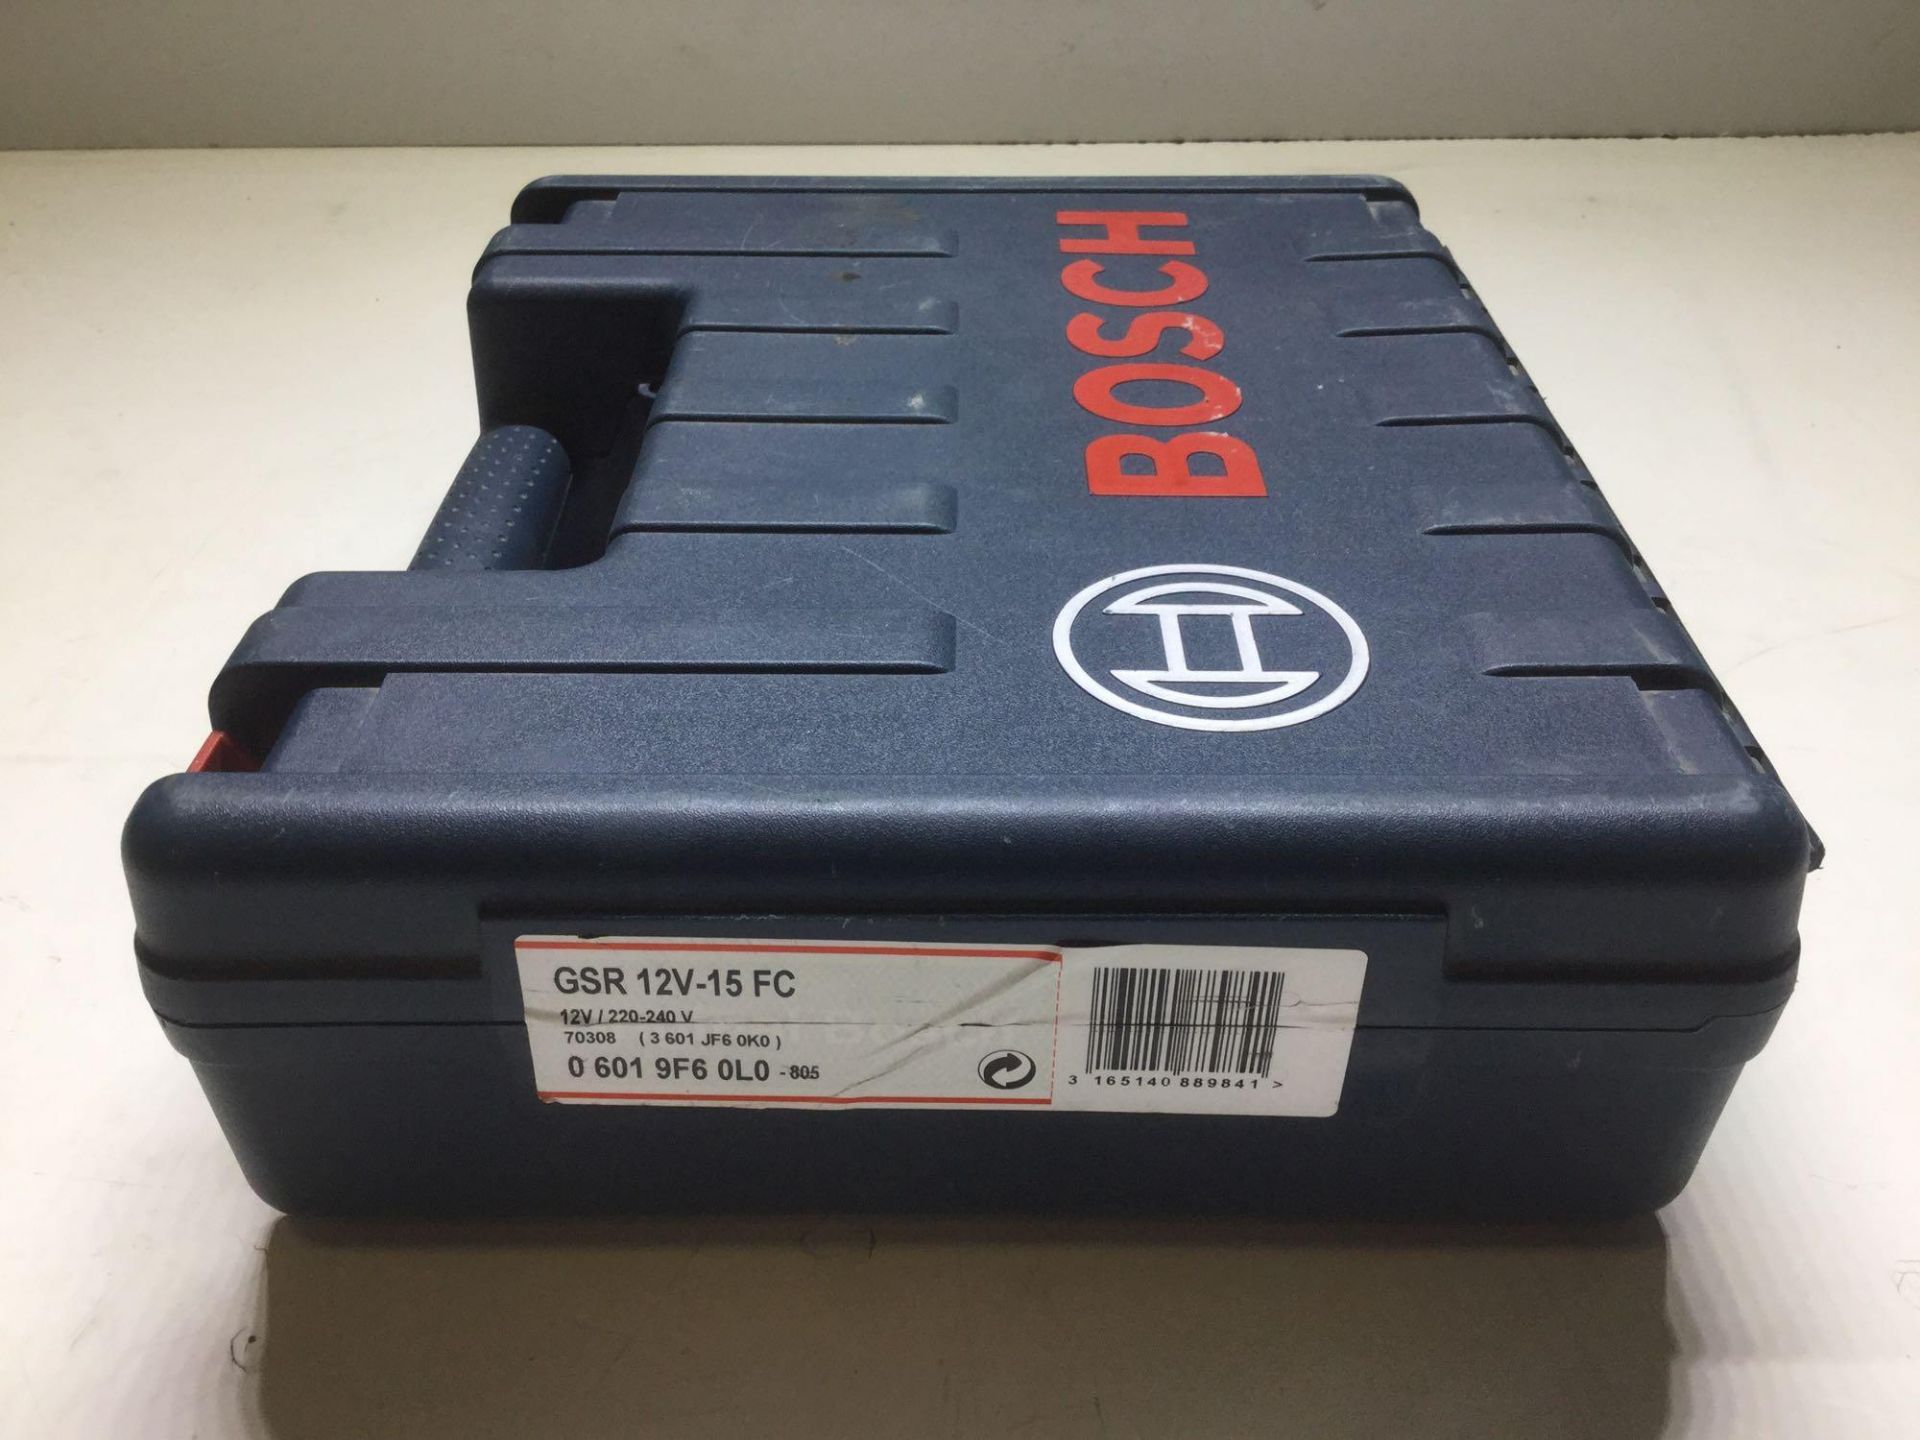 Bosch Professional GSR 12v-15 FC Multi Chuck Drill Complete in box - Image 5 of 5